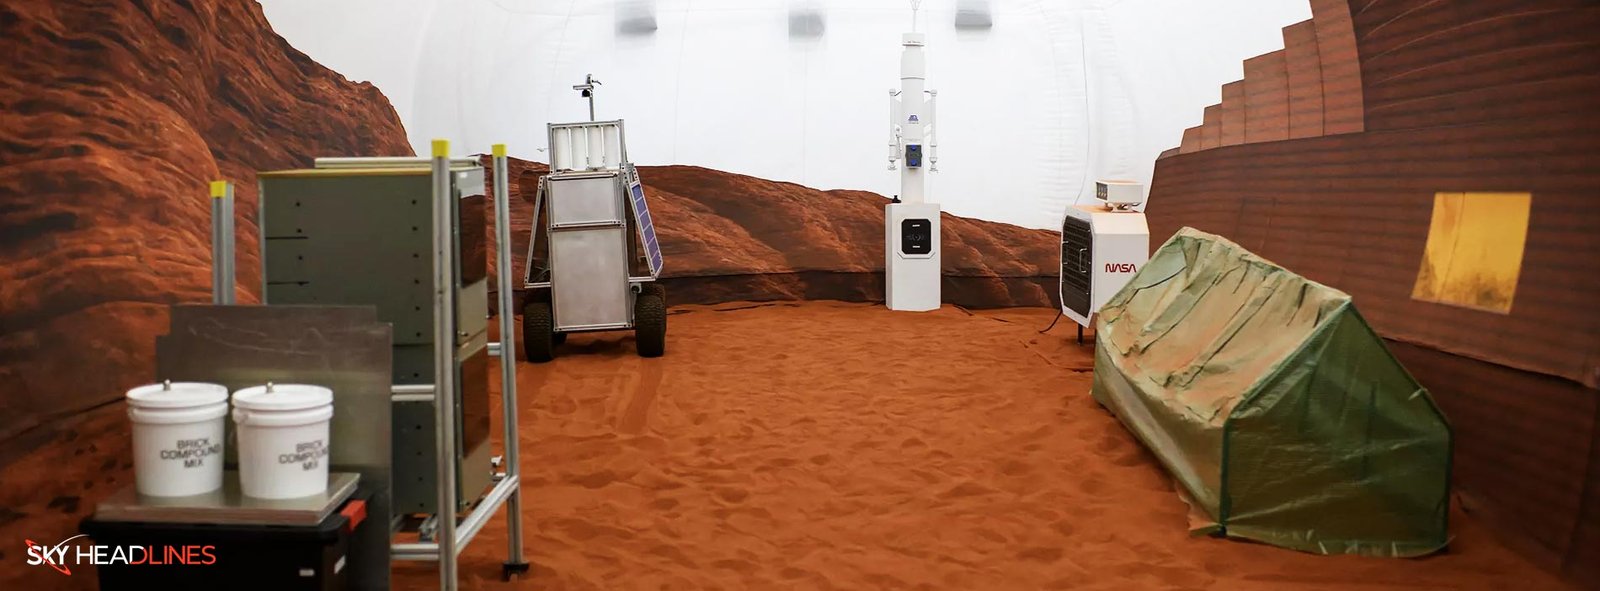 Mars-habitat